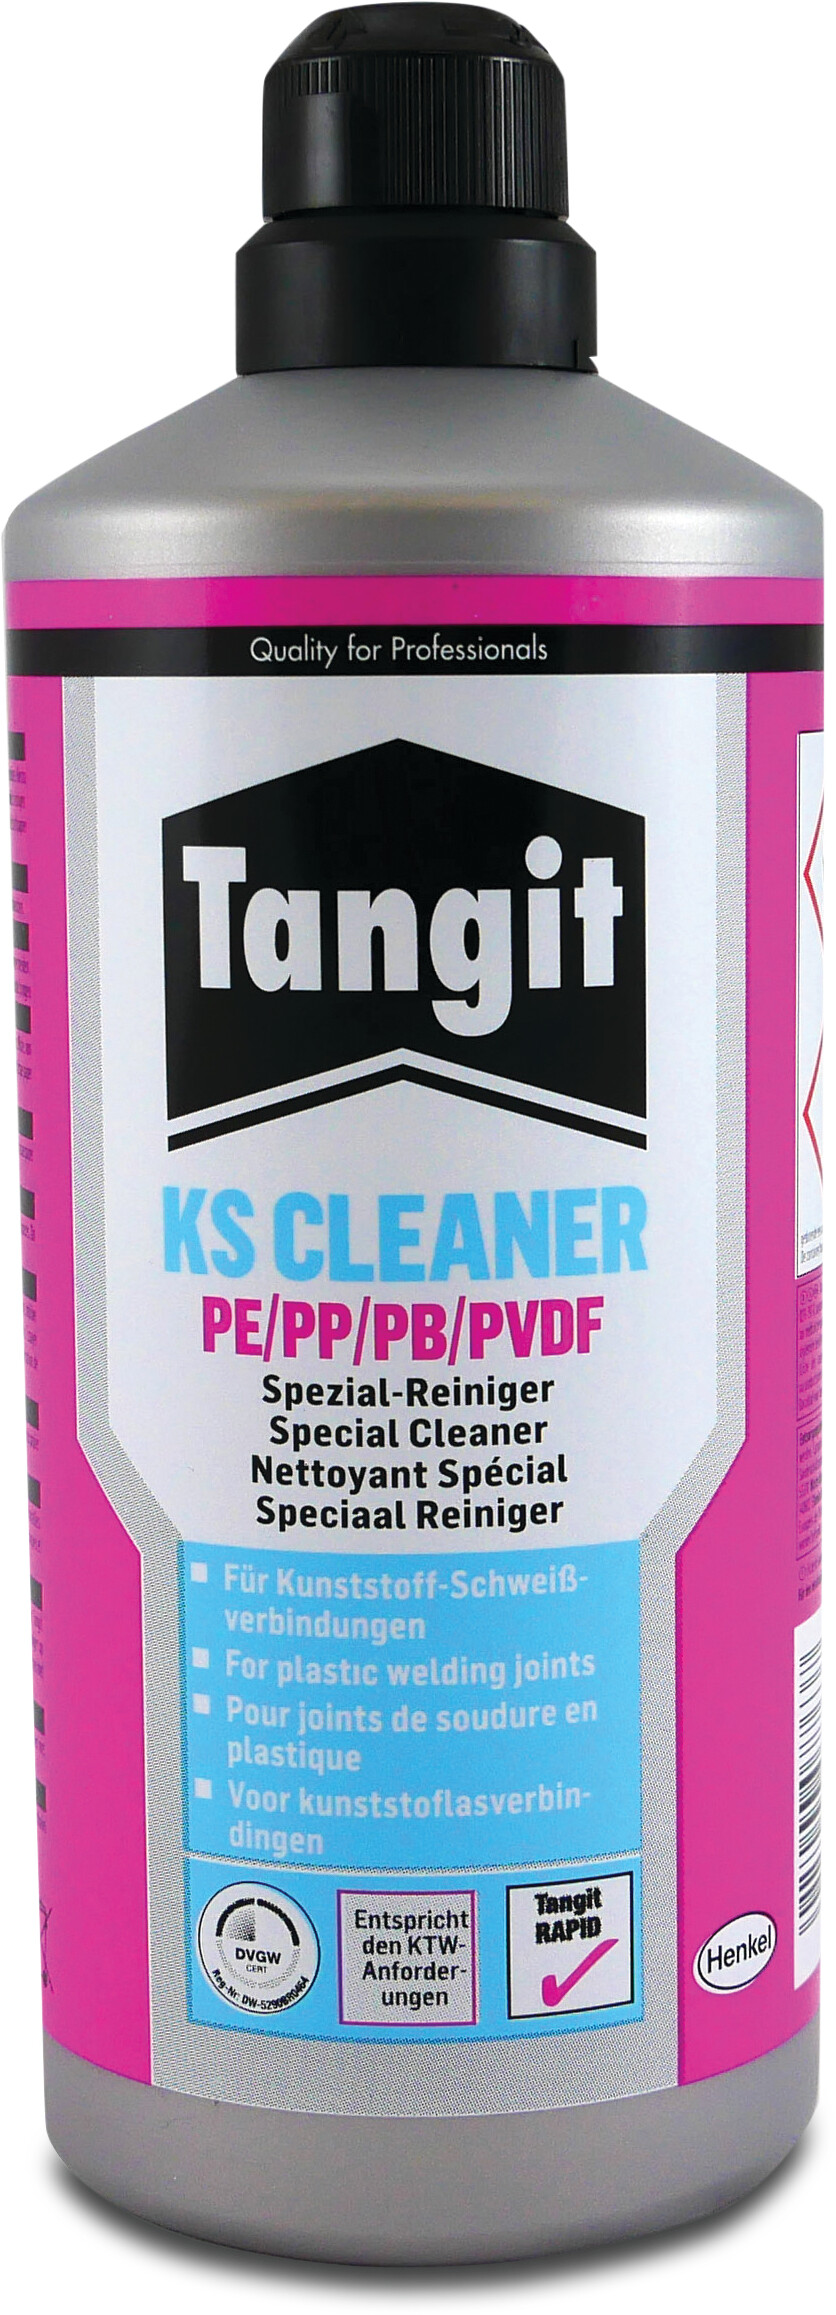 Tangit Solvent cleaner 1ltr type KS